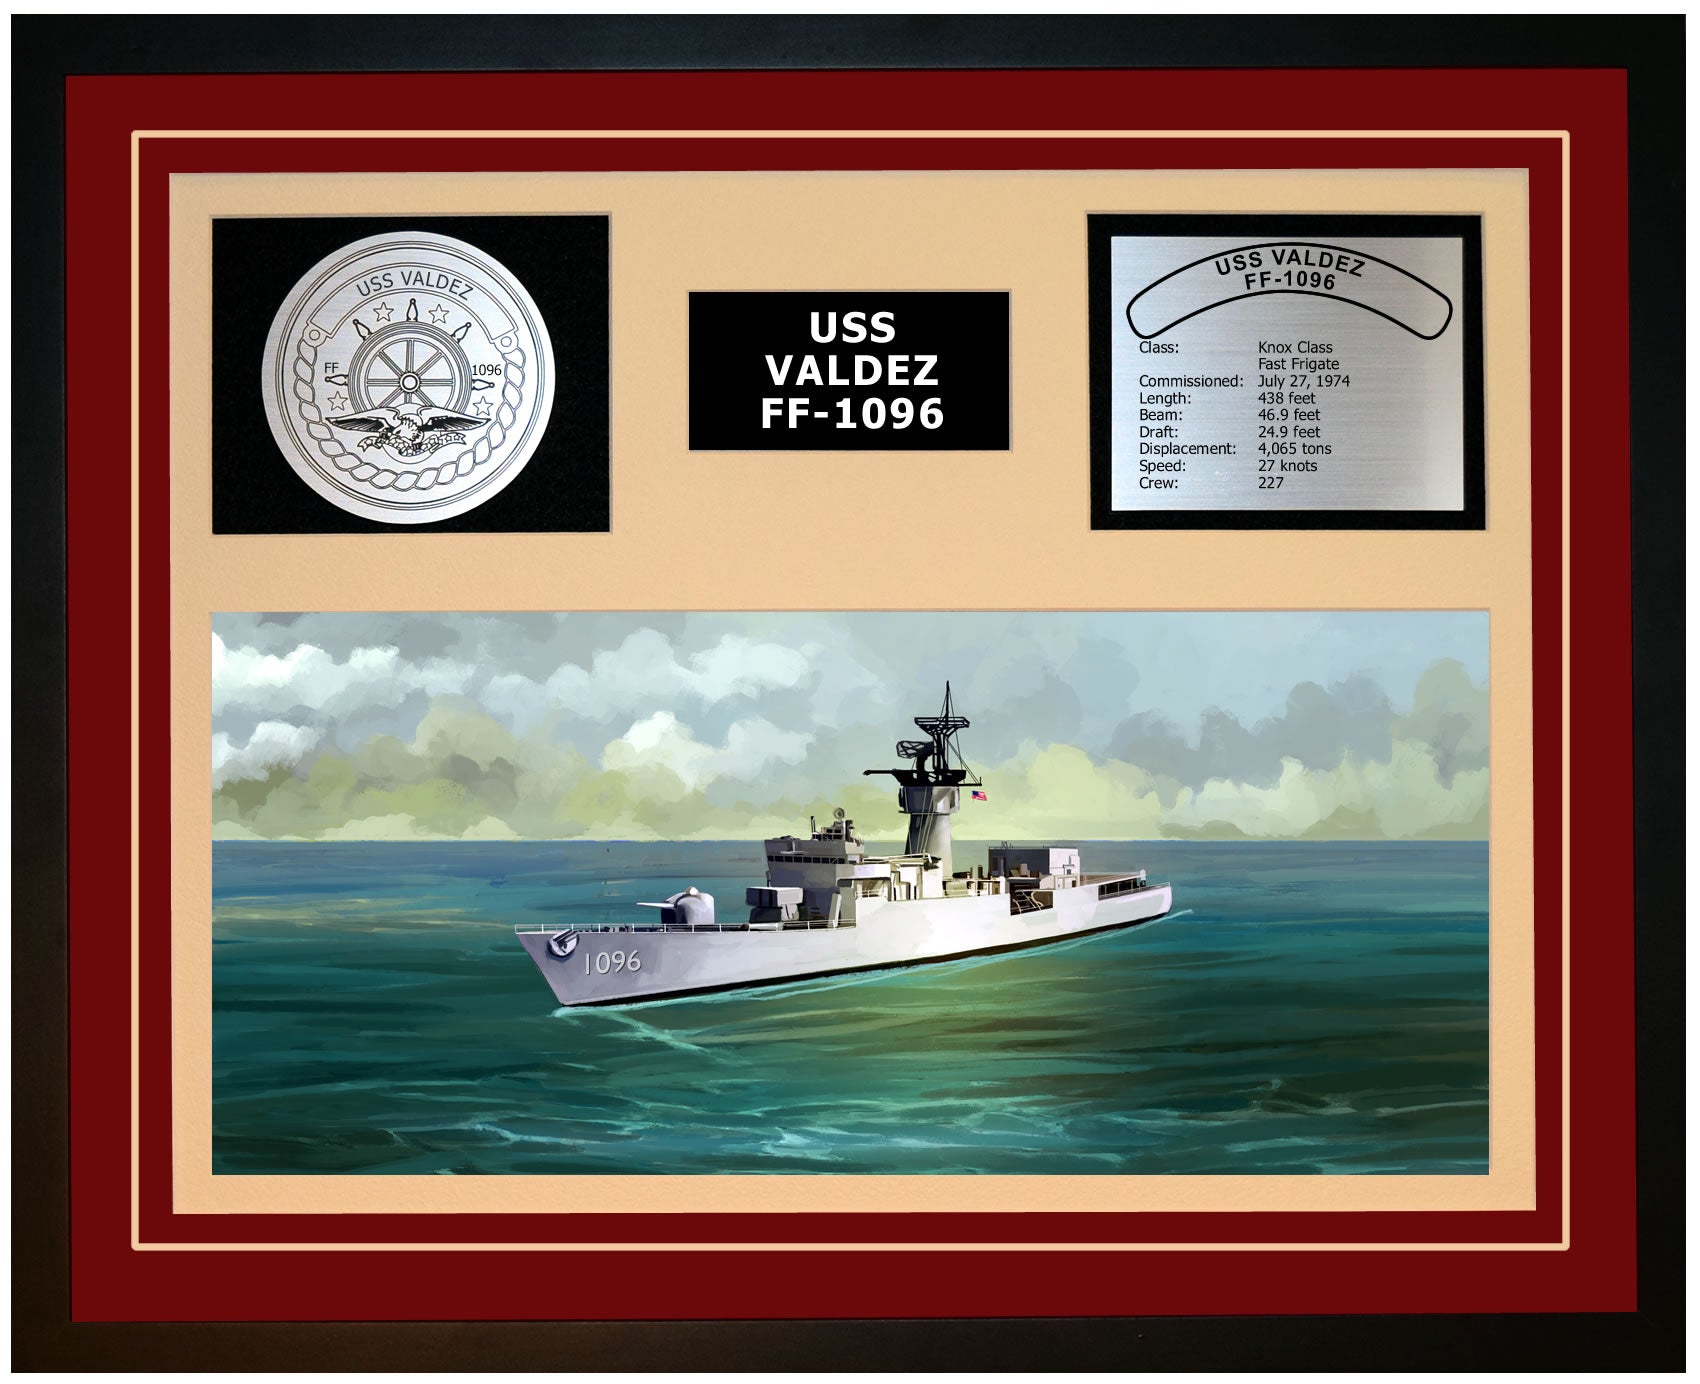 USS VALDEZ FF-1096 Framed Navy Ship Display Burgundy